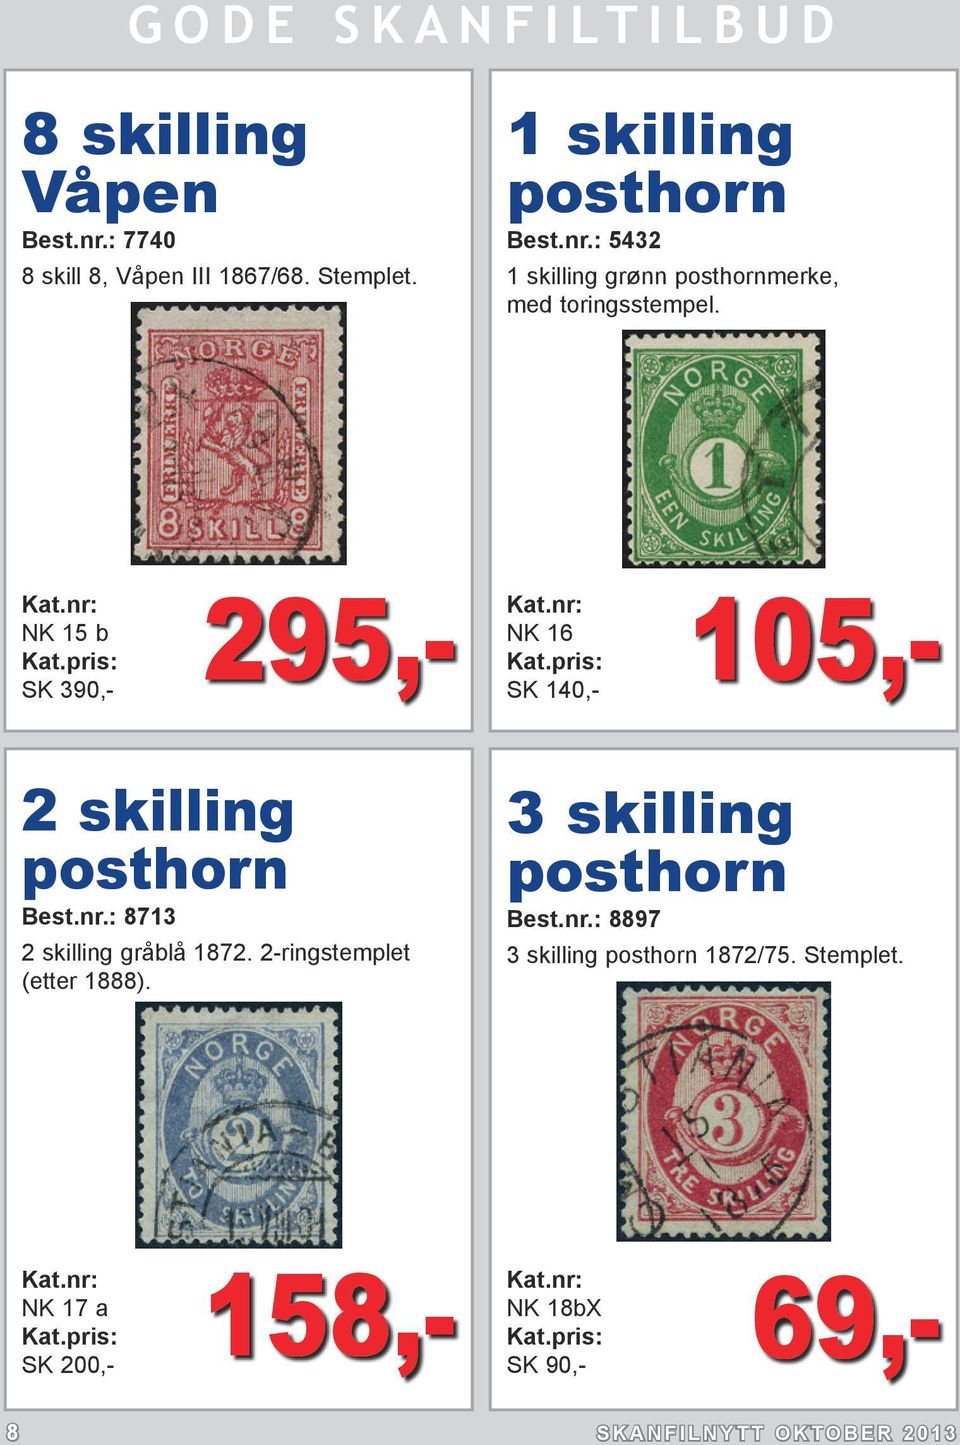 2-ringstemplet (etter 1888). 3 skilling posthorn Best.nr.: 8897 3 skilling posthorn 1872/75. Stemplet.